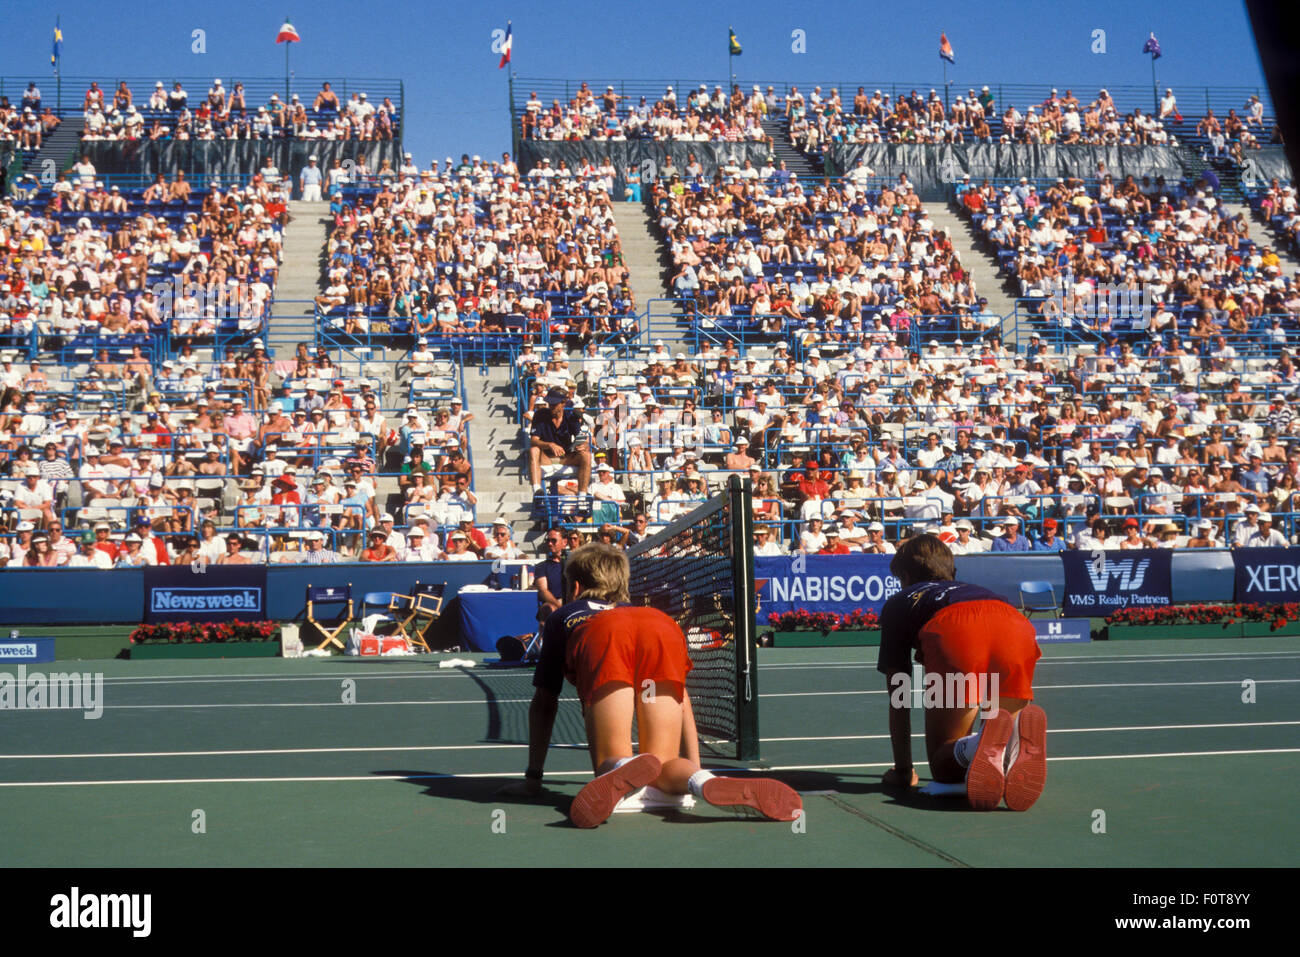 Balljungen bei Net für die Newsweek Champions Cup-Turnier in Indian Wells, Kalifornien im März 1988. Stockfoto